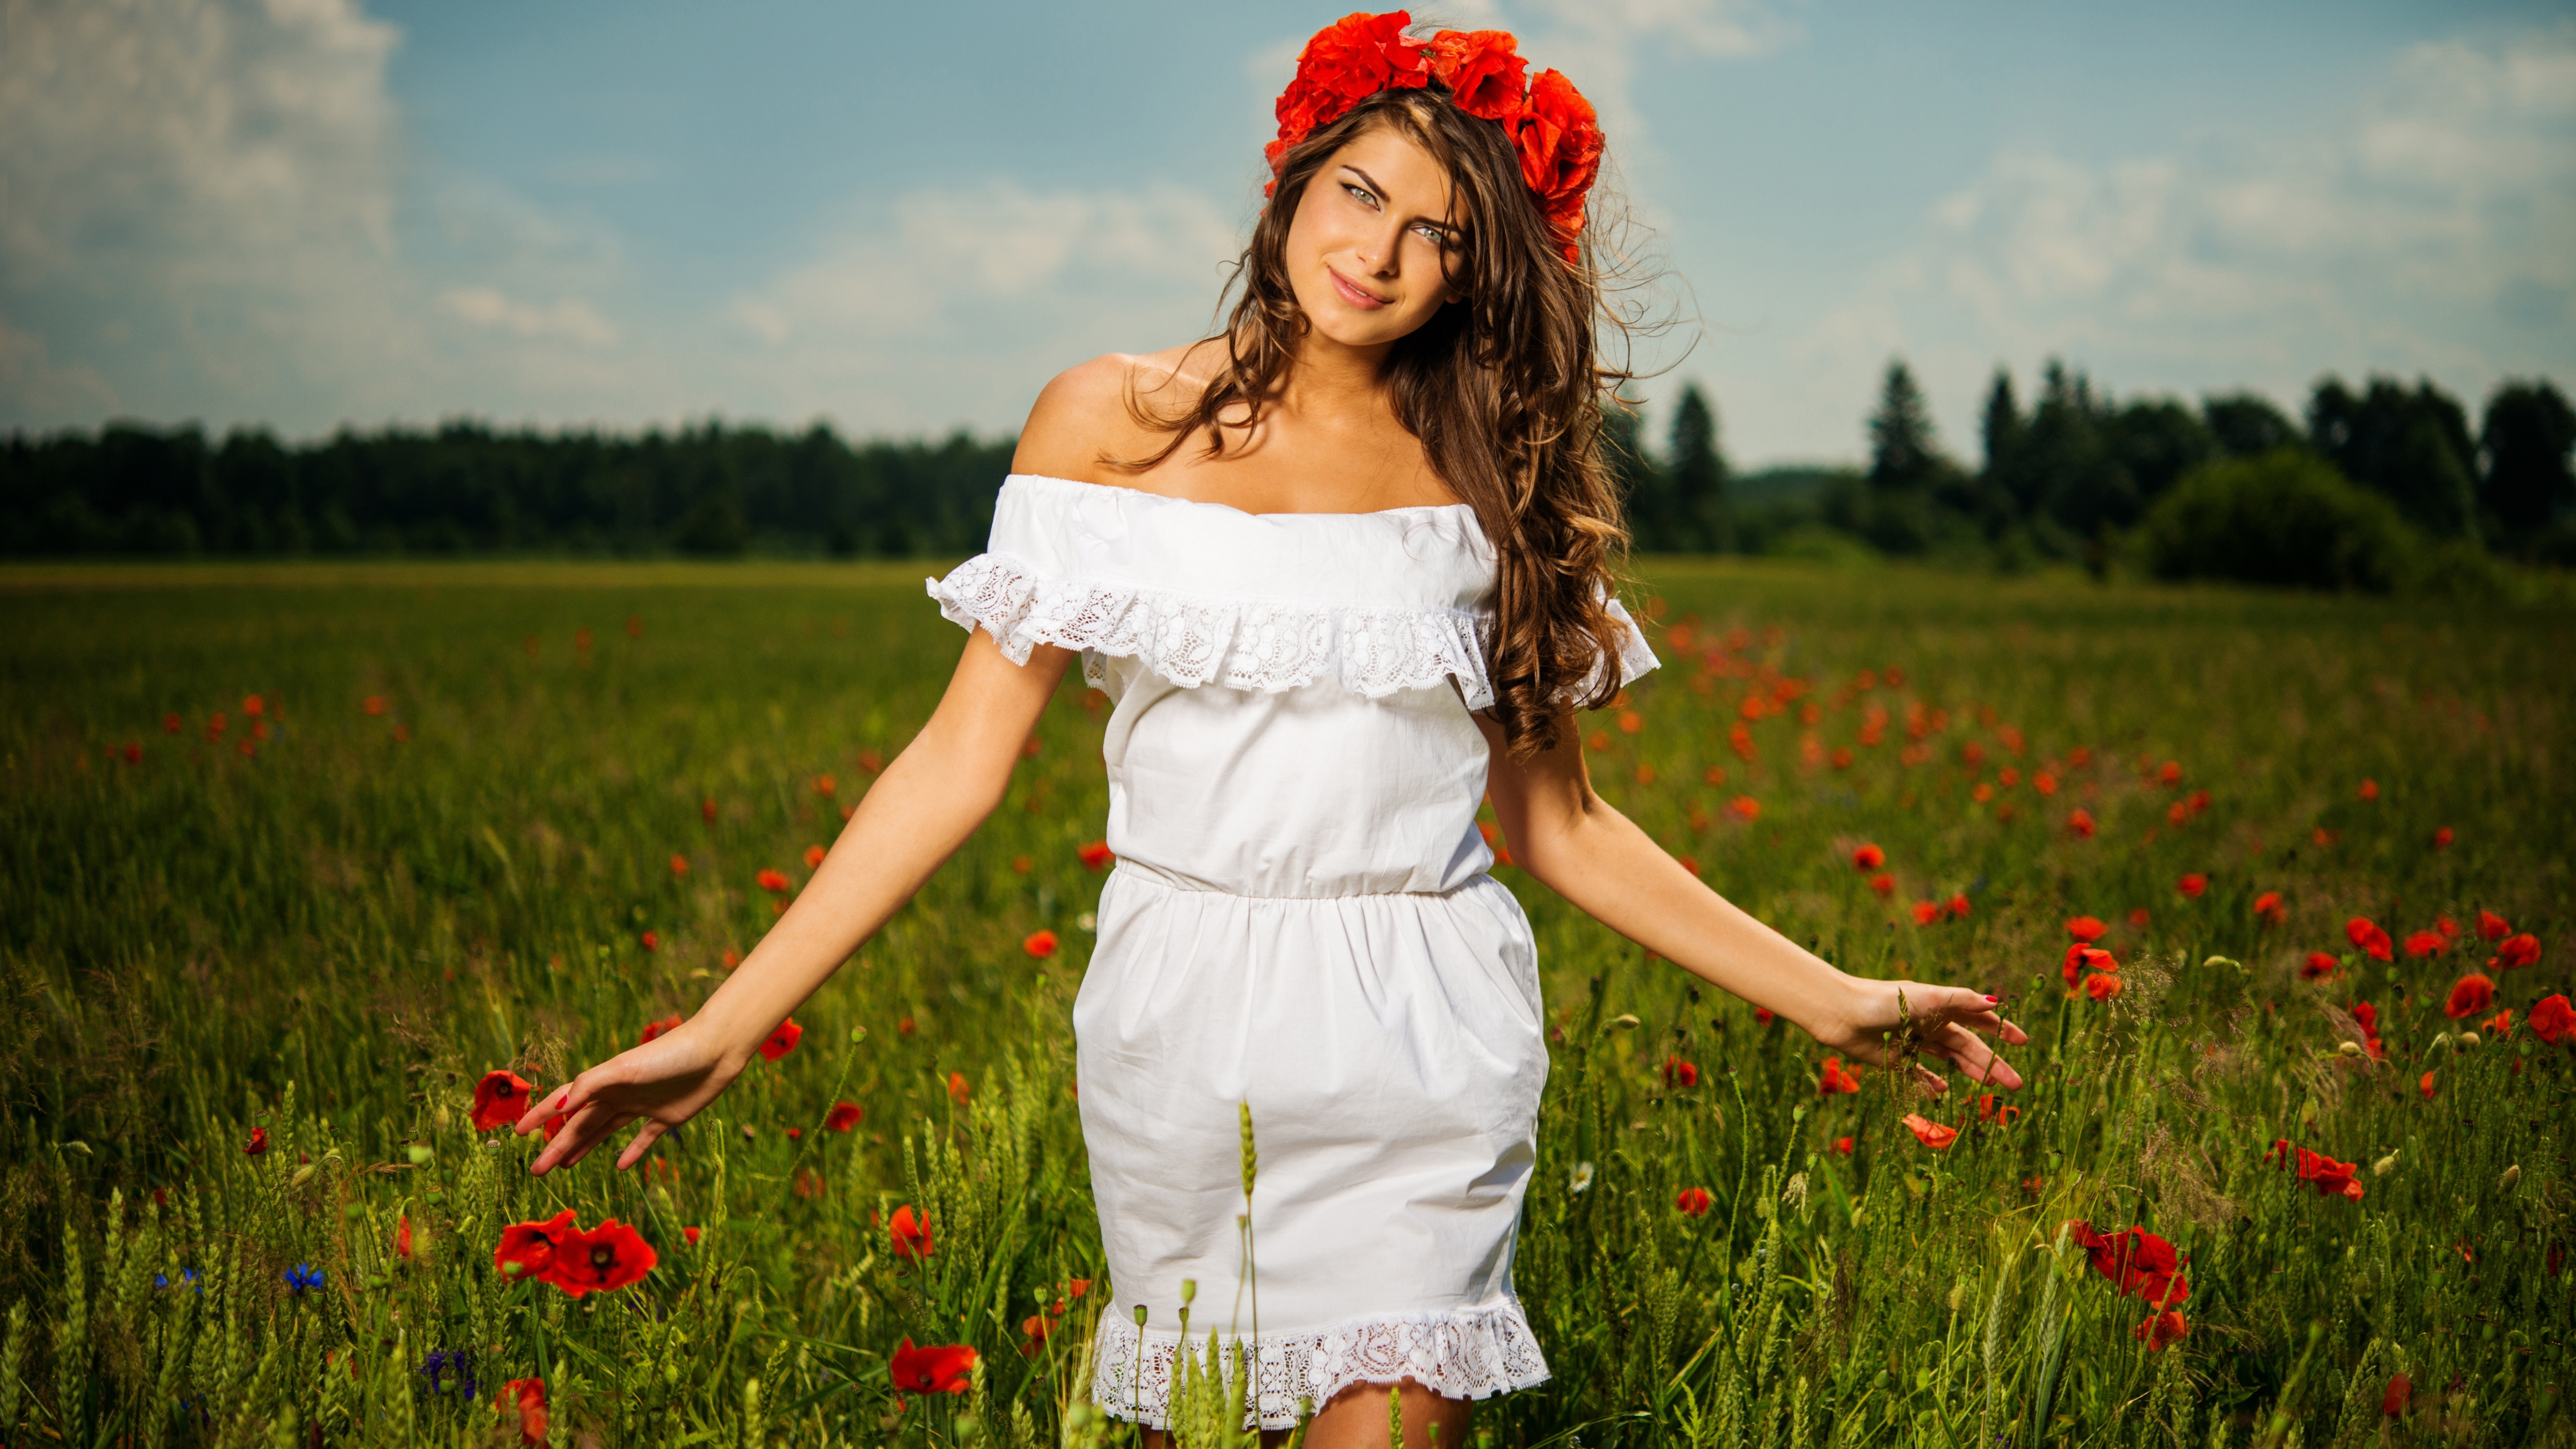 Я русская красивая деваха автор. Фотосессия девушки на природе. Красивые девушки в сарафанах. Красивые девушки в летних сарафанах. Девушка в сарафане в поле.